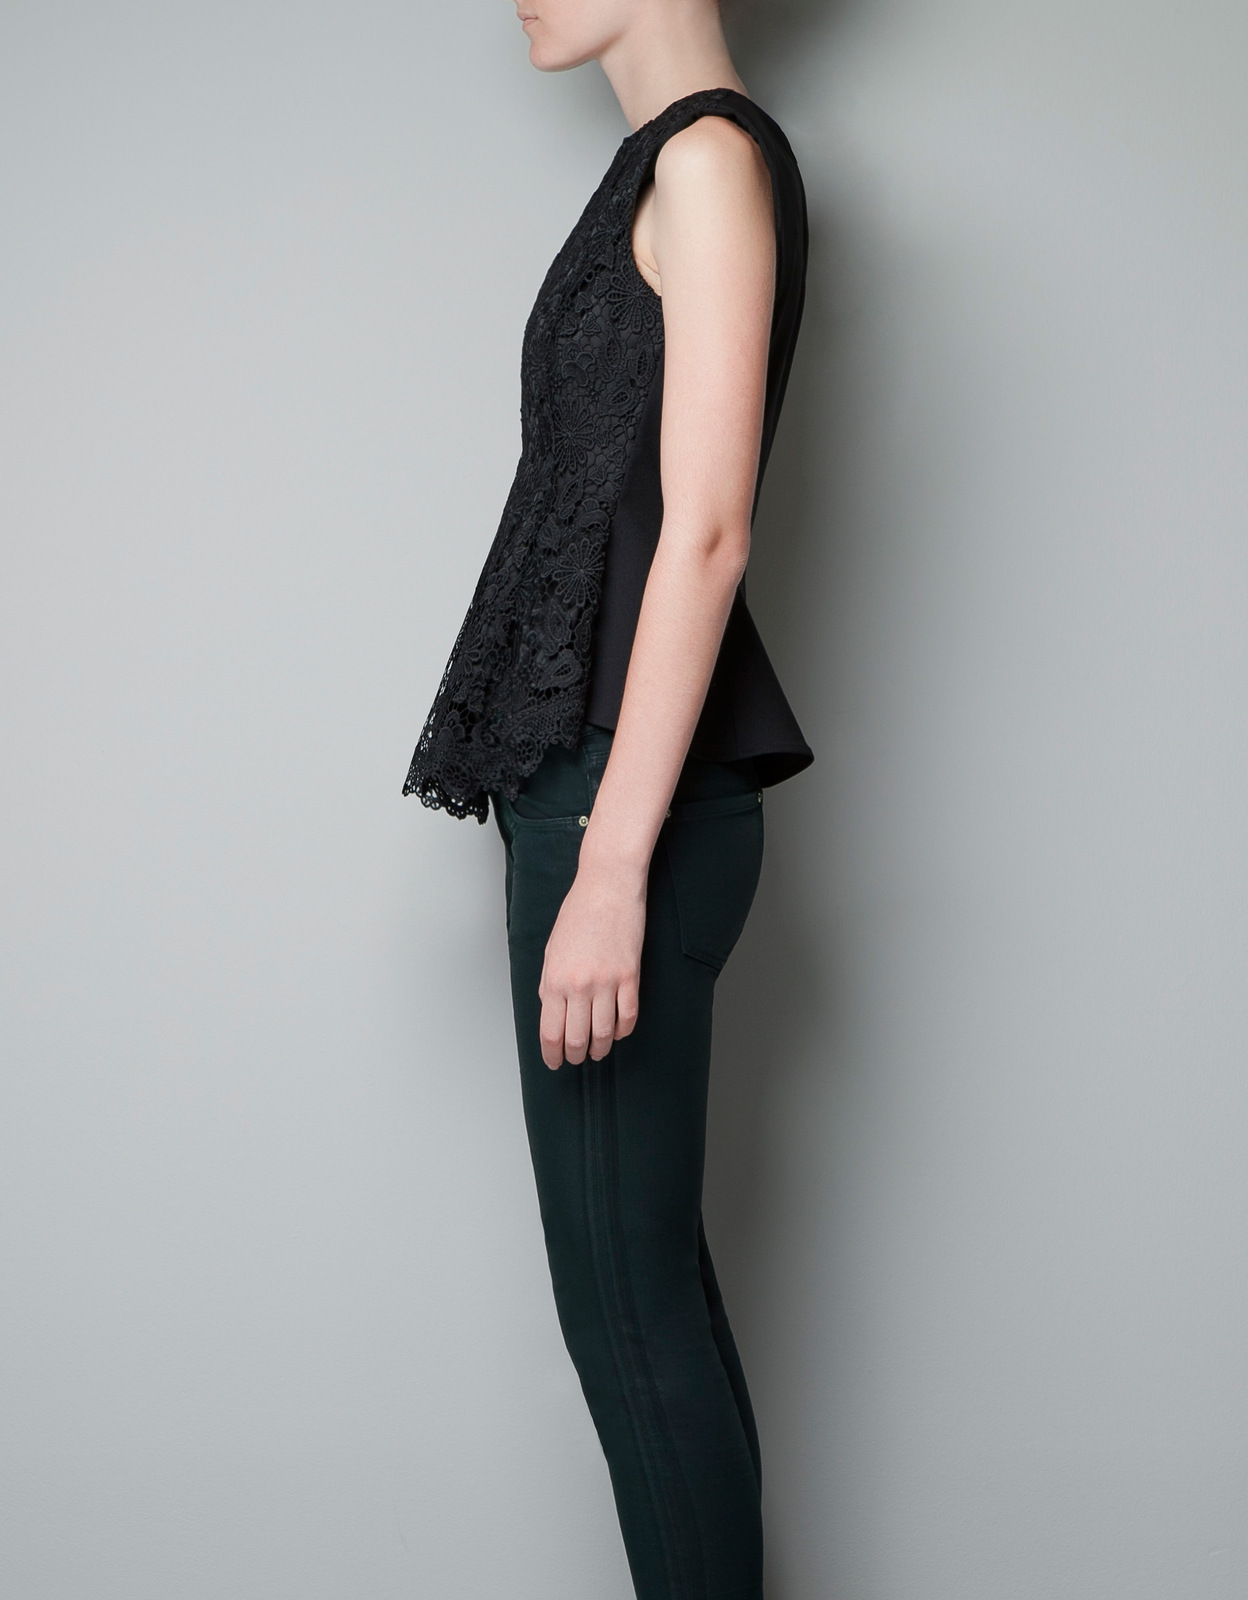 Zara csipkés fekete top 2012.10.21 #20347 fotója